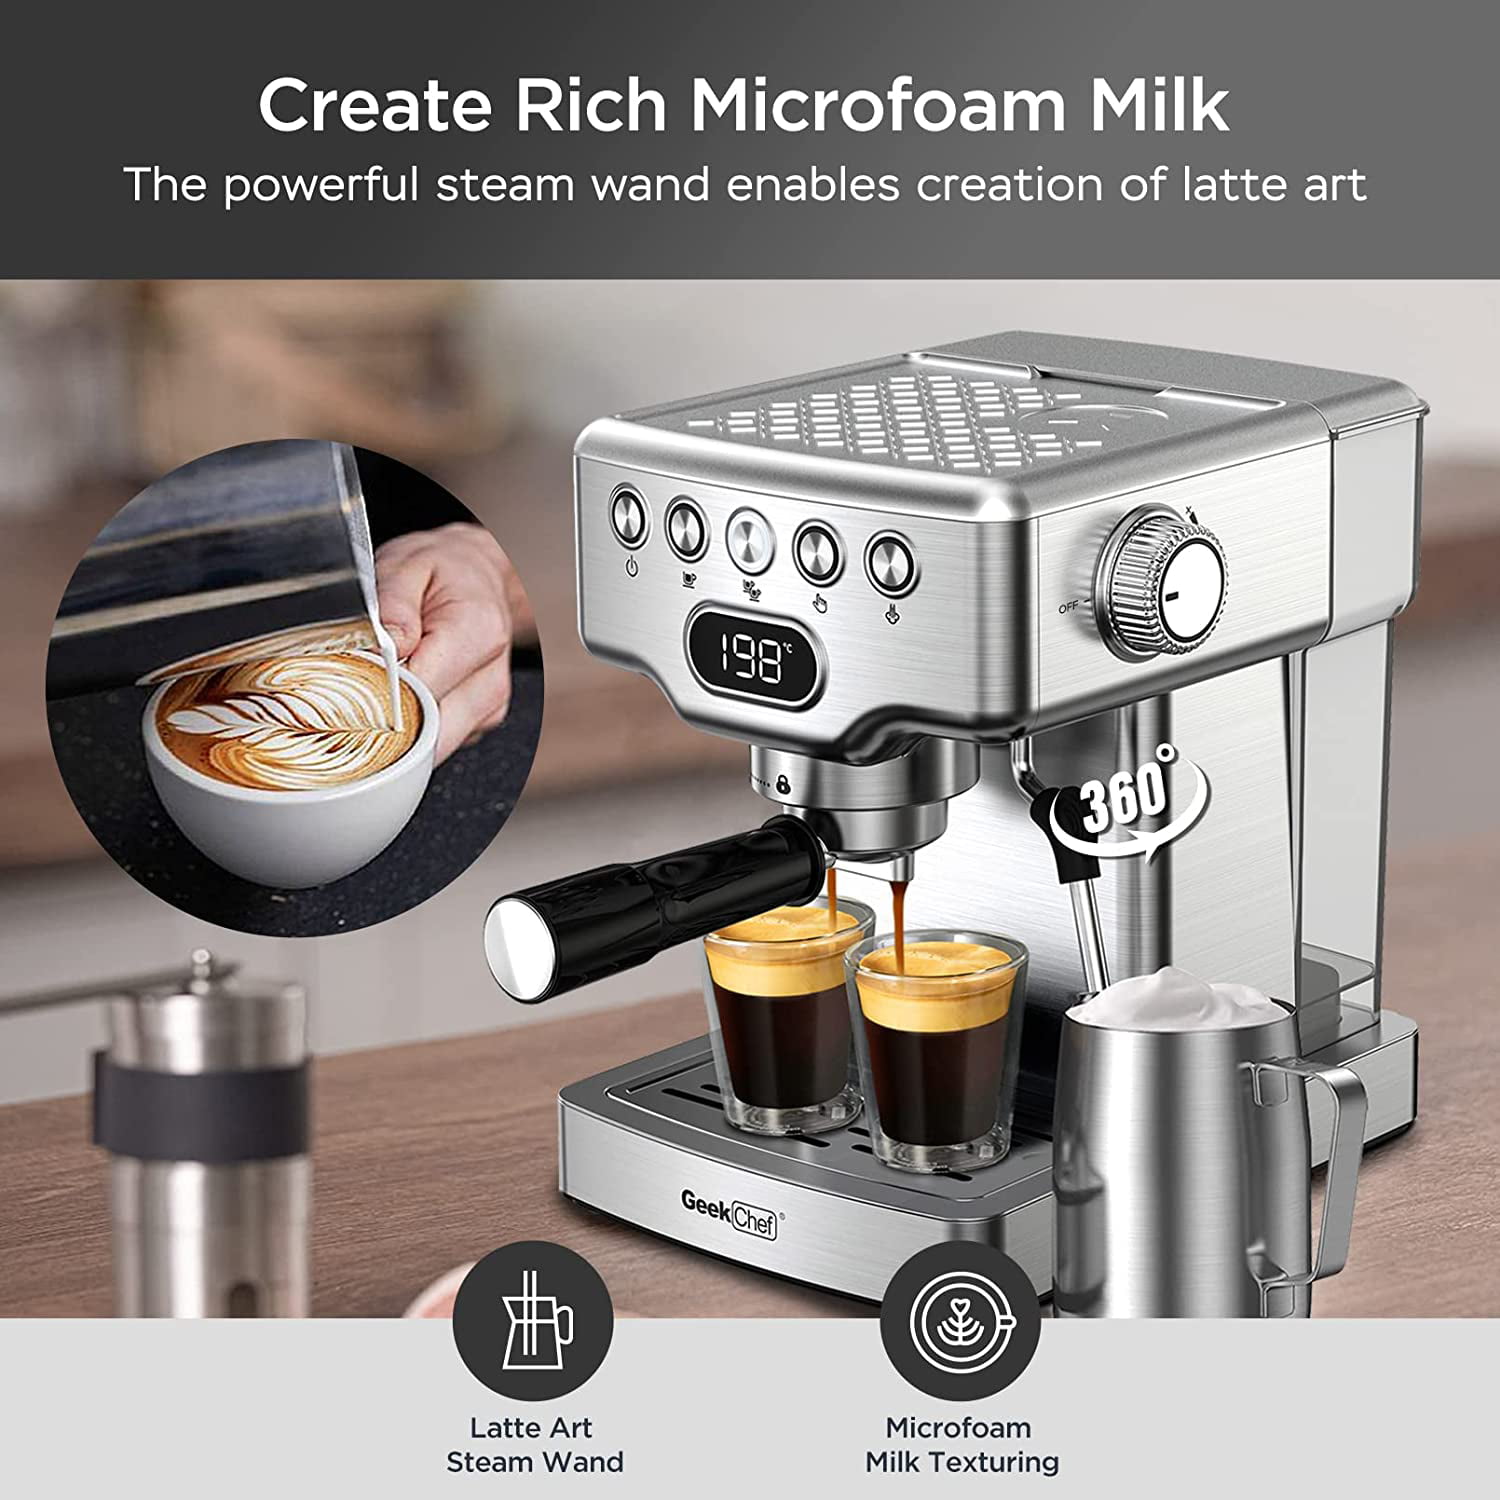 Geek Chef Espresso Machine, 20 Bar Espresso Machine With Milk